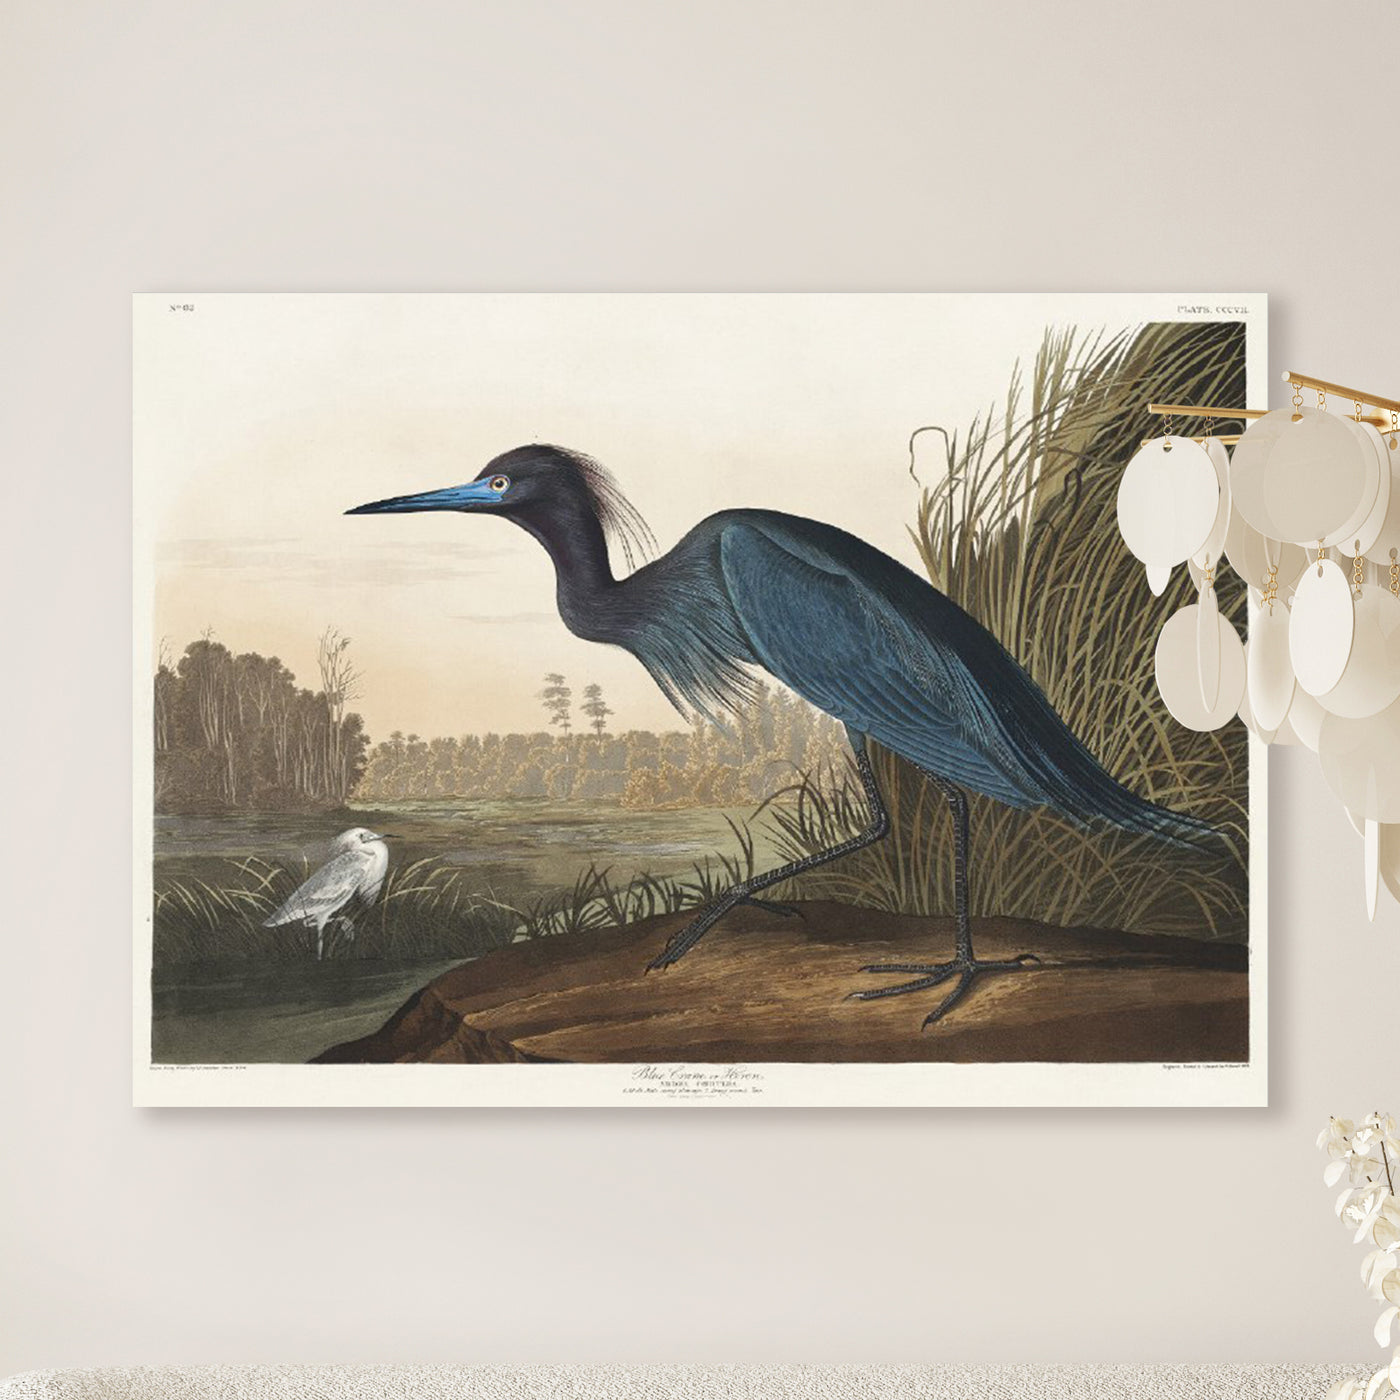 Blauer Kranich oder Reiher aus Birds of America (1827) von John James Audubon